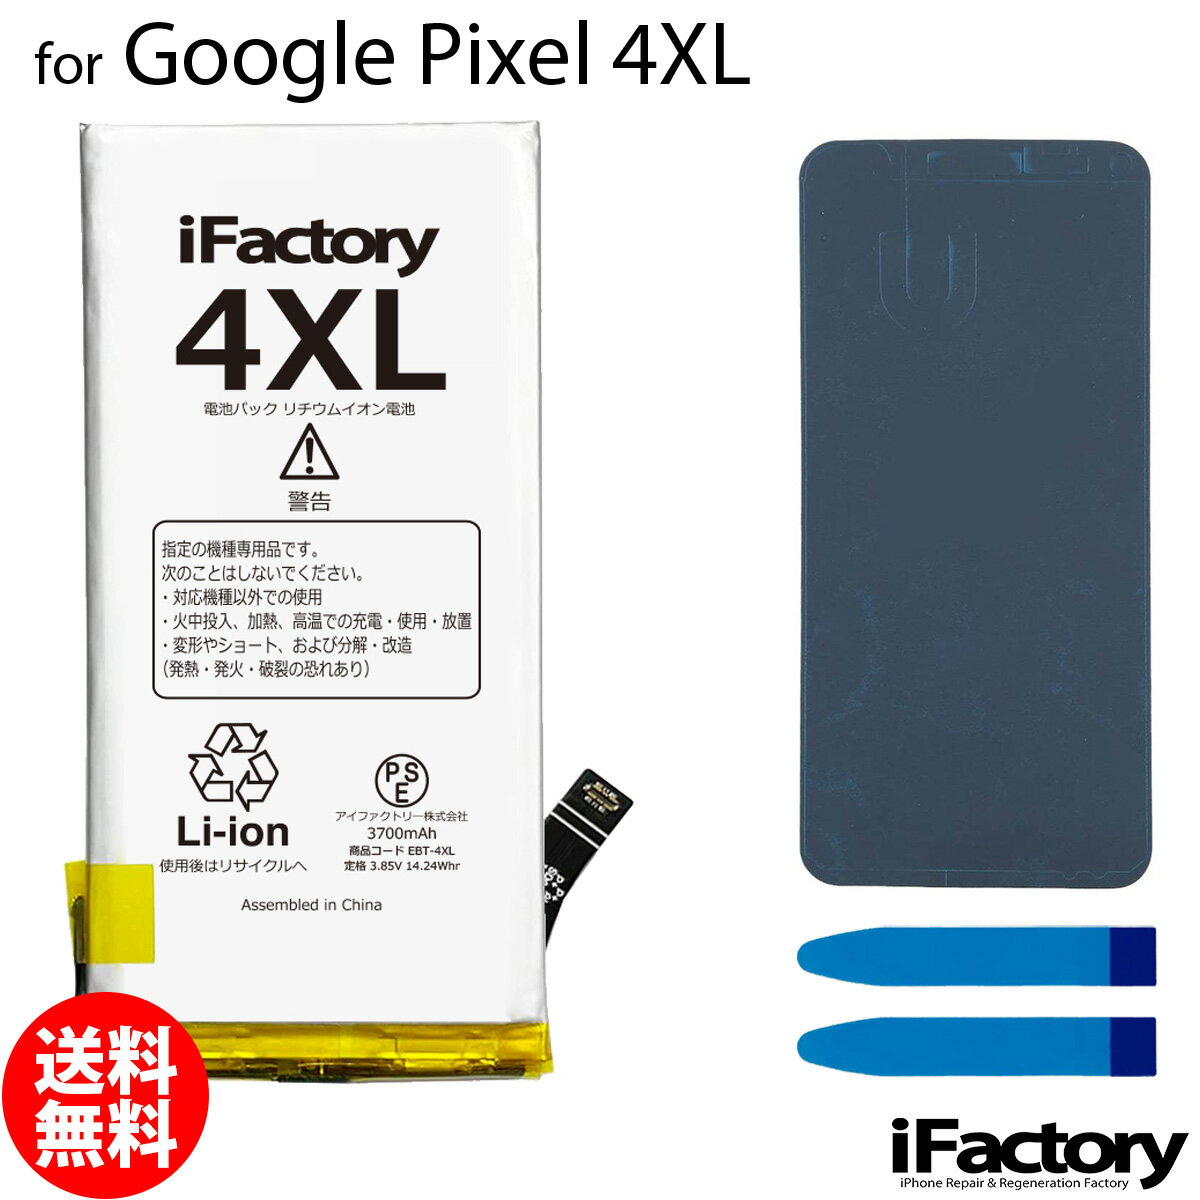 Google Pixel 4XL専用 交換用バッテリーです。 ご自分で修理、交換される方向けのリペアパーツとなります。 バッテリー固定用の両面テープ・パネルテープが付属します。 ●バッテリーの持ちが悪い、充電しなくなった時などにご使用ください。 ●本体に装着後、満充電・満放電を数回繰り返し、コンディションの調整をされる事をお勧めいたします。 ●こちらの商品を使用した際に起こった機器などの破損及び損失についての保証は一切いたしません。ご了承の上お買い上げ下さい。 ●デザインが一部写真と異なる場合がございます。 ●メールにて取付に関するサポートをお受けしております ●手順書は付属しません。交換方法につきましては「iFixit」「分解工房」「Youtube」等のサイトで事前にご確認ください。 メール便の場合送料無料でお届けいたします。（保証あり・ポストに投函） あす楽に対応する配送方法は「宅急便コンパクト」のみとなります。ご注意ください。 製品保証規定 保証期間内において以下の場合を除き、不具合発生時には交換もしくは返金の対応をさせていただきます。 ・故障、不具合の原因が故意のもの、取扱い上の不注意である場合（落下・水没等） ・通常の範囲を超える状況での使用による故障・損傷・早期劣化（常に充電をしながらの使用、高温・低温下での使用など） ・充放電回数が500回前後に達した場合の劣化・長期保管後の使用時に発生した不具合 ・不具合がバッテリーに起因しない場合（OSアップデート後の動作不良など）グーグル ピクセル 電池類似商品はこちらGoogle Pixel 3XL 互換バッテリ2,830円Google Pixel 4 互換バッテリー 2,830円Google Pixel 4XL 互換バッテリ3,100円Google Pixel 3 互換バッテリー 2,830円Google Pixel 5 互換バッテリー 2,930円Google Pixel 3XL 互換バッテリ3,100円Google Pixel 4 互換バッテリー 3,100円Google Pixel 3aXL 互換バッテ2,830円Google Pixel 5a 互換バッテリー2,930円新着商品はこちら2024/4/27iPhoneXSMax バッテリー 高品質 交3,030円2024/4/27iPhoneXR バッテリー 高品質 交換 互2,950円2024/4/22iPhone12 12Pro 12ProMax3,030円～再販商品はこちら2024/5/19iPhone各種用 分解用工具 ピンセット T600円2024/5/19iPhone5 パワー/マナー/ボリュームフレ800円2024/5/19Nintendo Switch ジョイコン J900円2024/05/20 更新 Google Pixel 4XL 互換バッテリー 交換 PSE準拠 1年間保証 グーグル ピクセル 【新入荷】 メール便送料無料！お急ぎの方は宅急便コンパクトをお選びください ご自分で「安く」「早く」交換したい方向けのバッテリー交換キットです。減りが早くて充電ばかりしていると更に劣化を早めてしまいます。このバッテリーで新品時の快適なPixelを取り戻しましょう！ 2